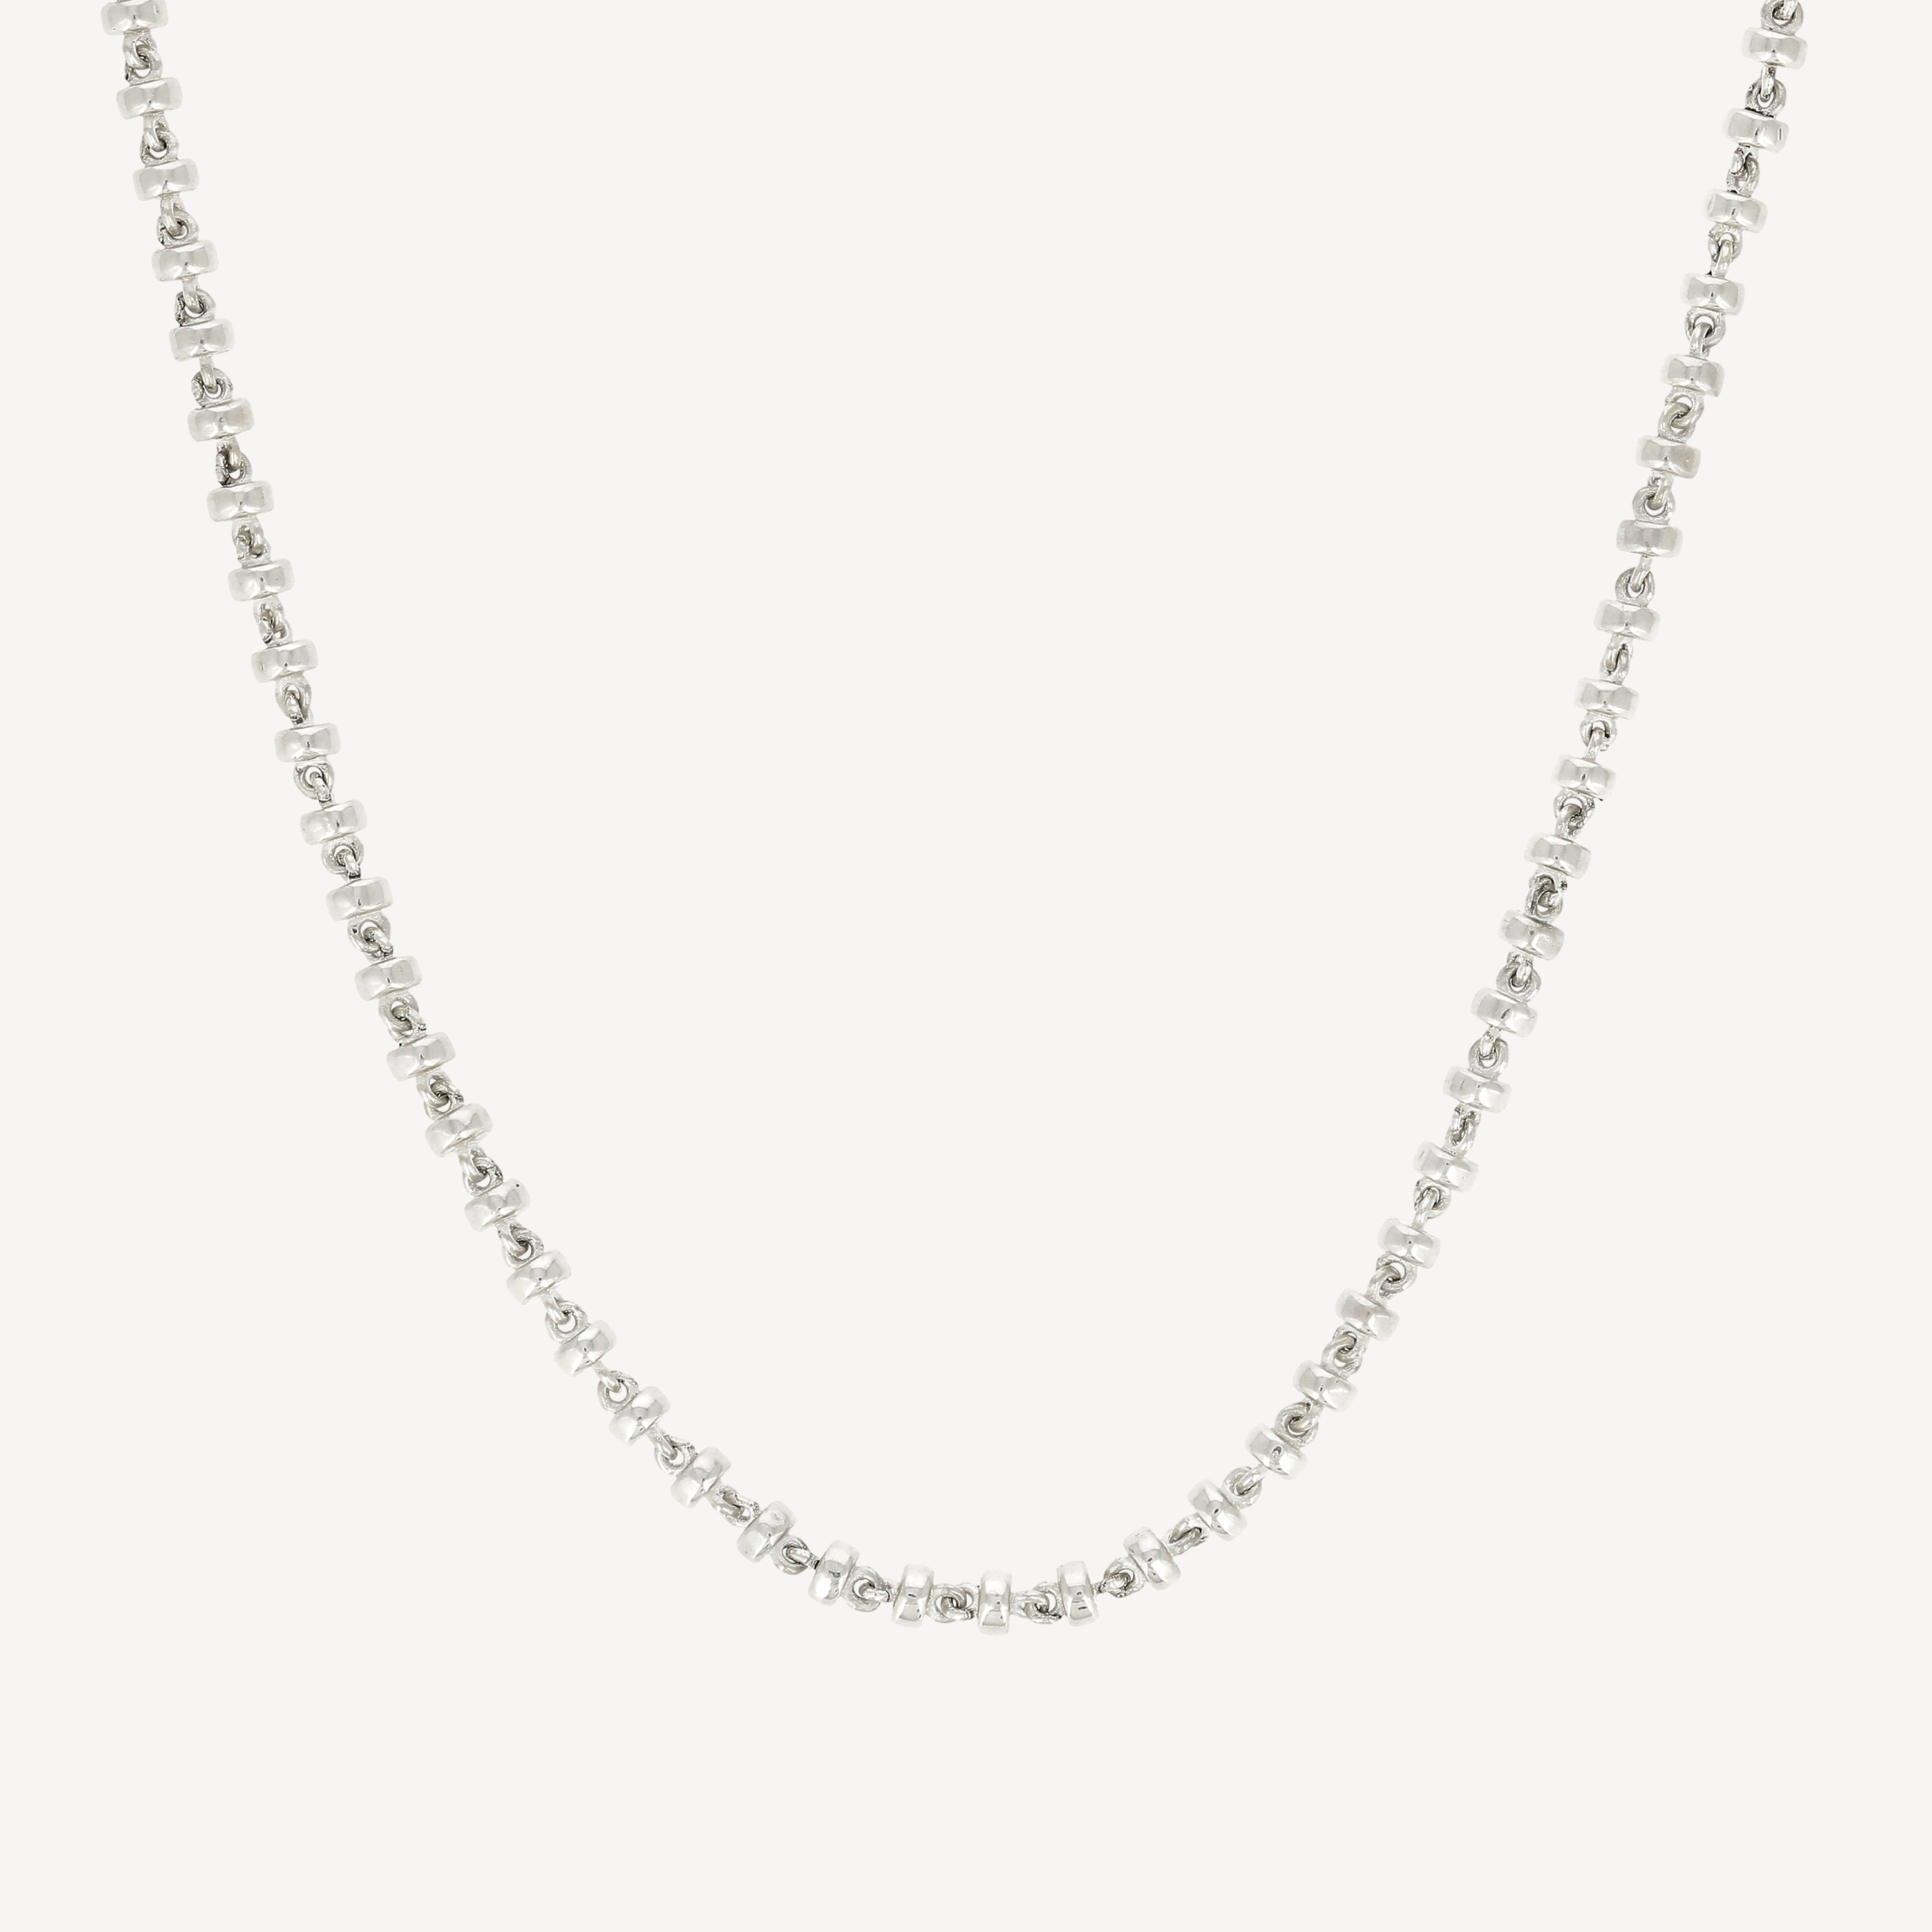 Omni 4mm Halskette Silber